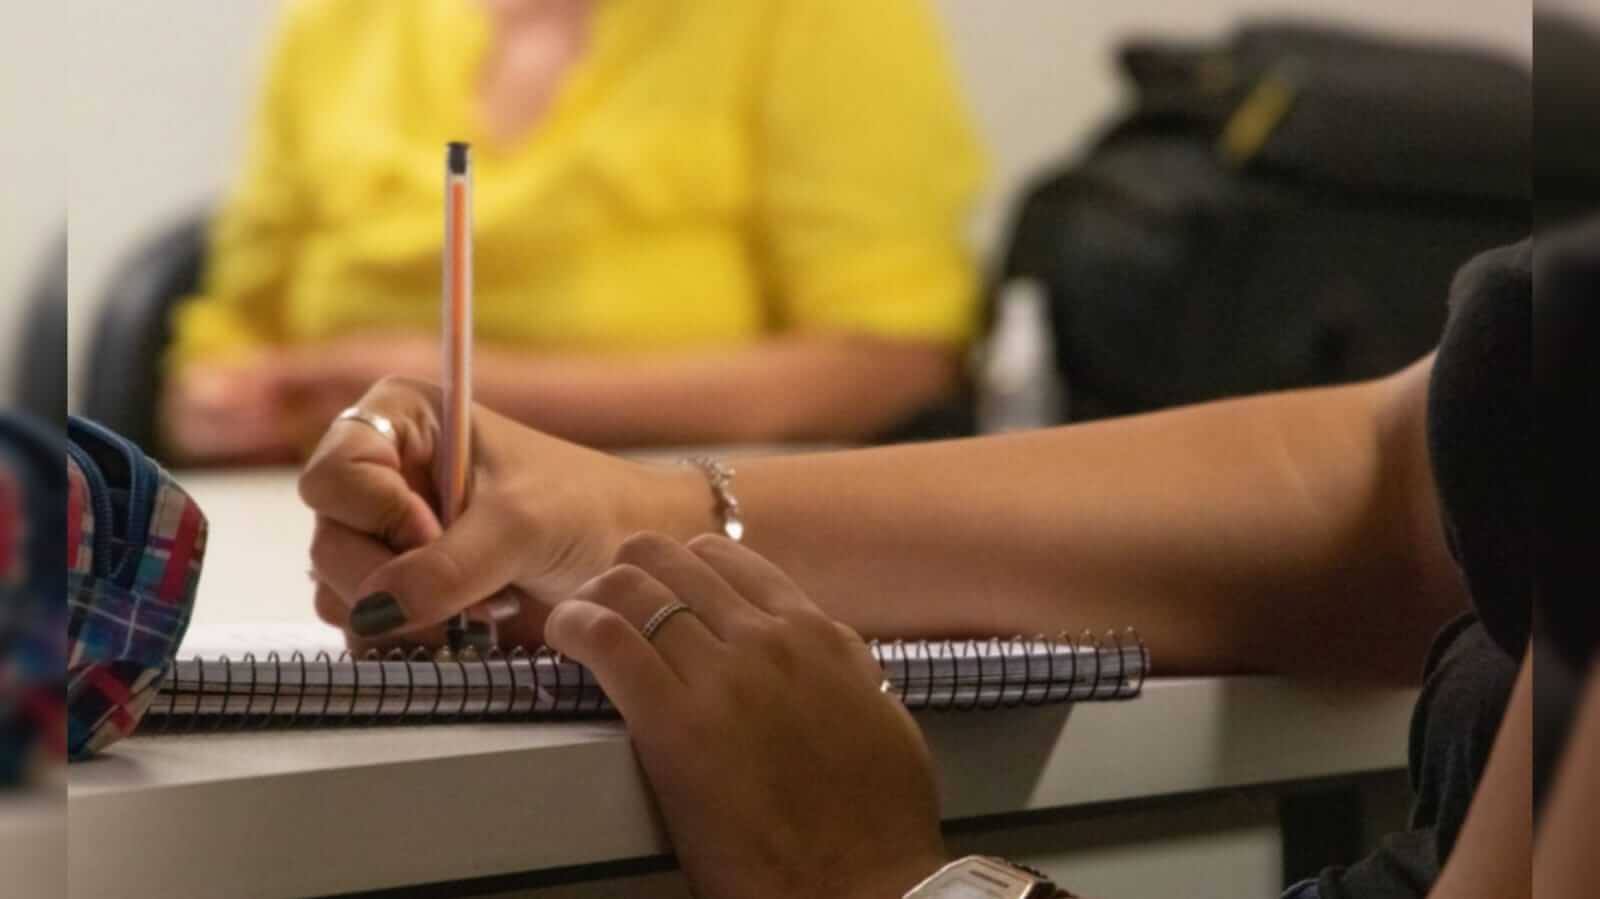 Pessoa com uma caneta na mão direita escrevendo em um caderno